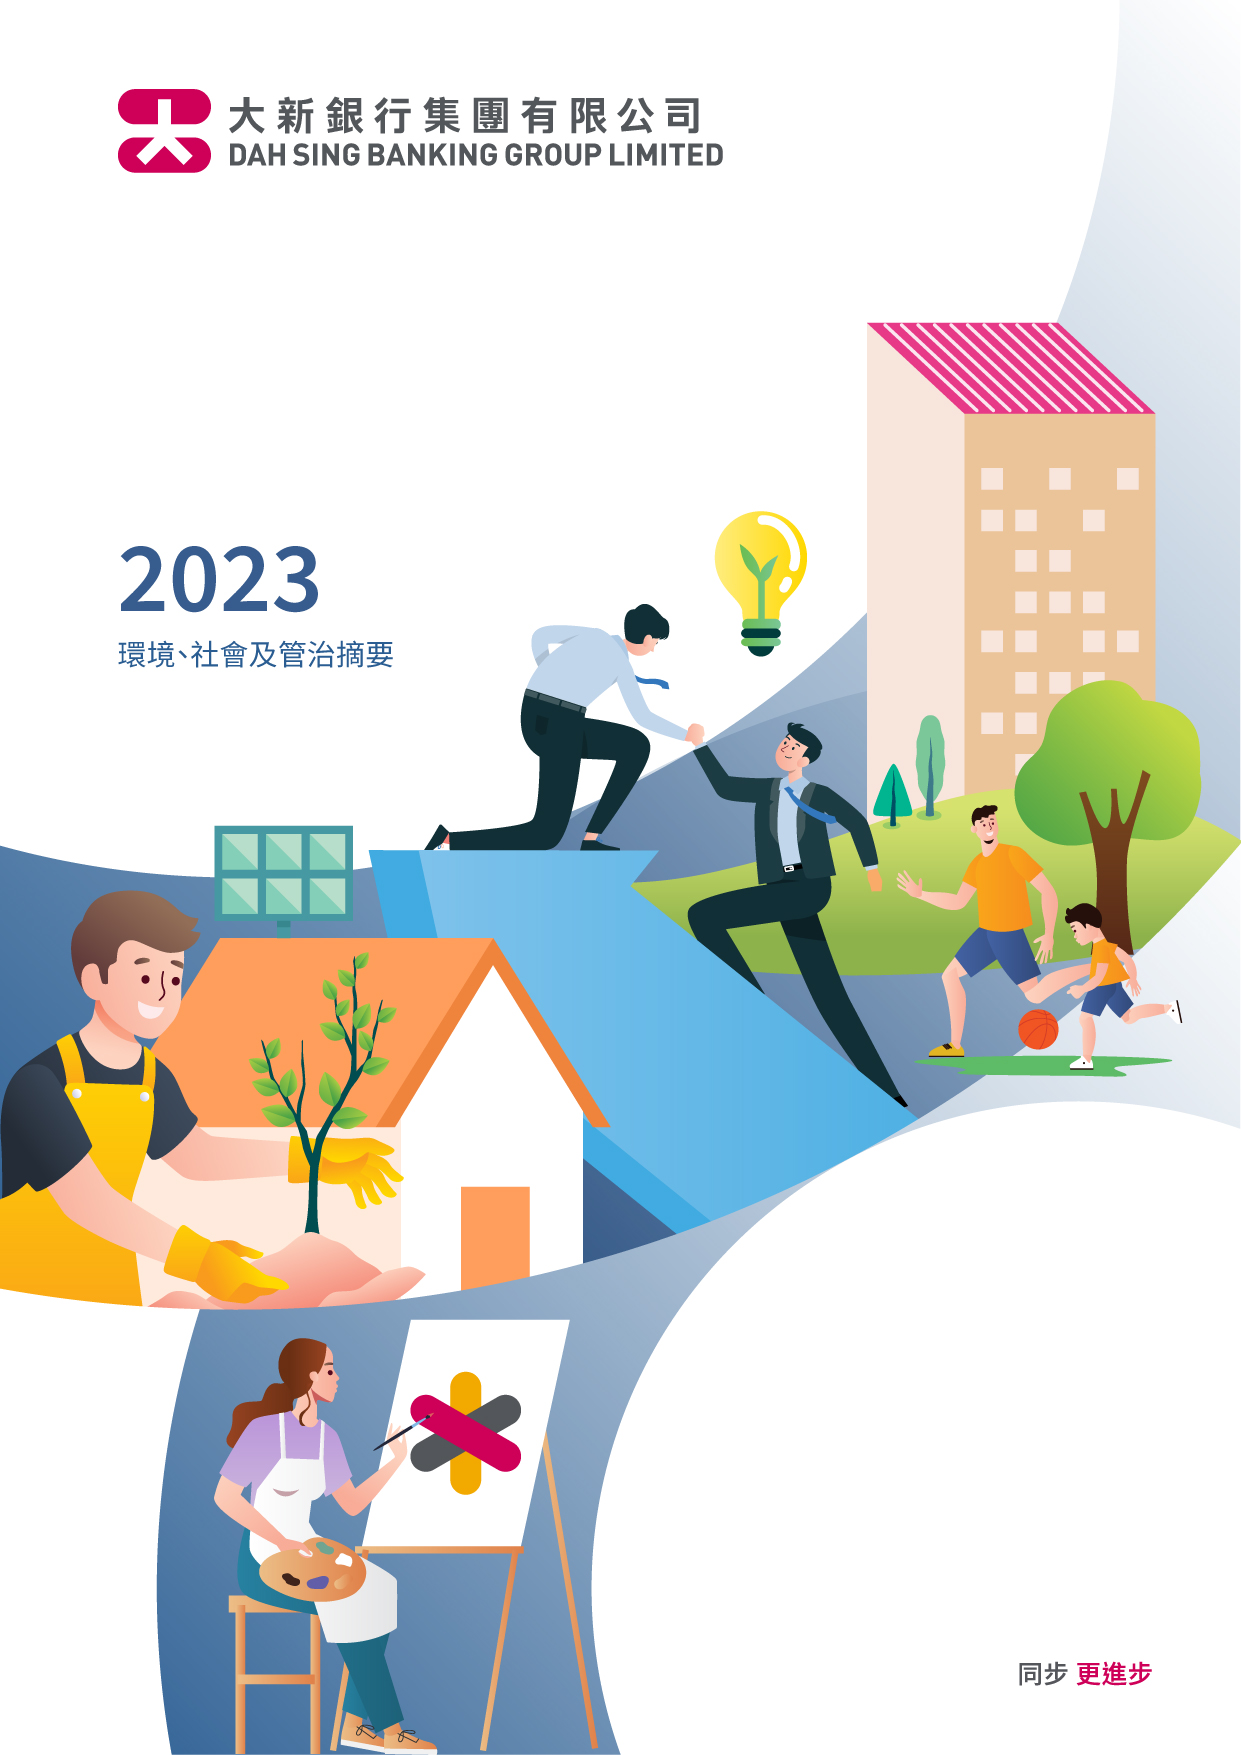 大新銀行集團有限公司 - 2023年度環境、社會及管治摘要